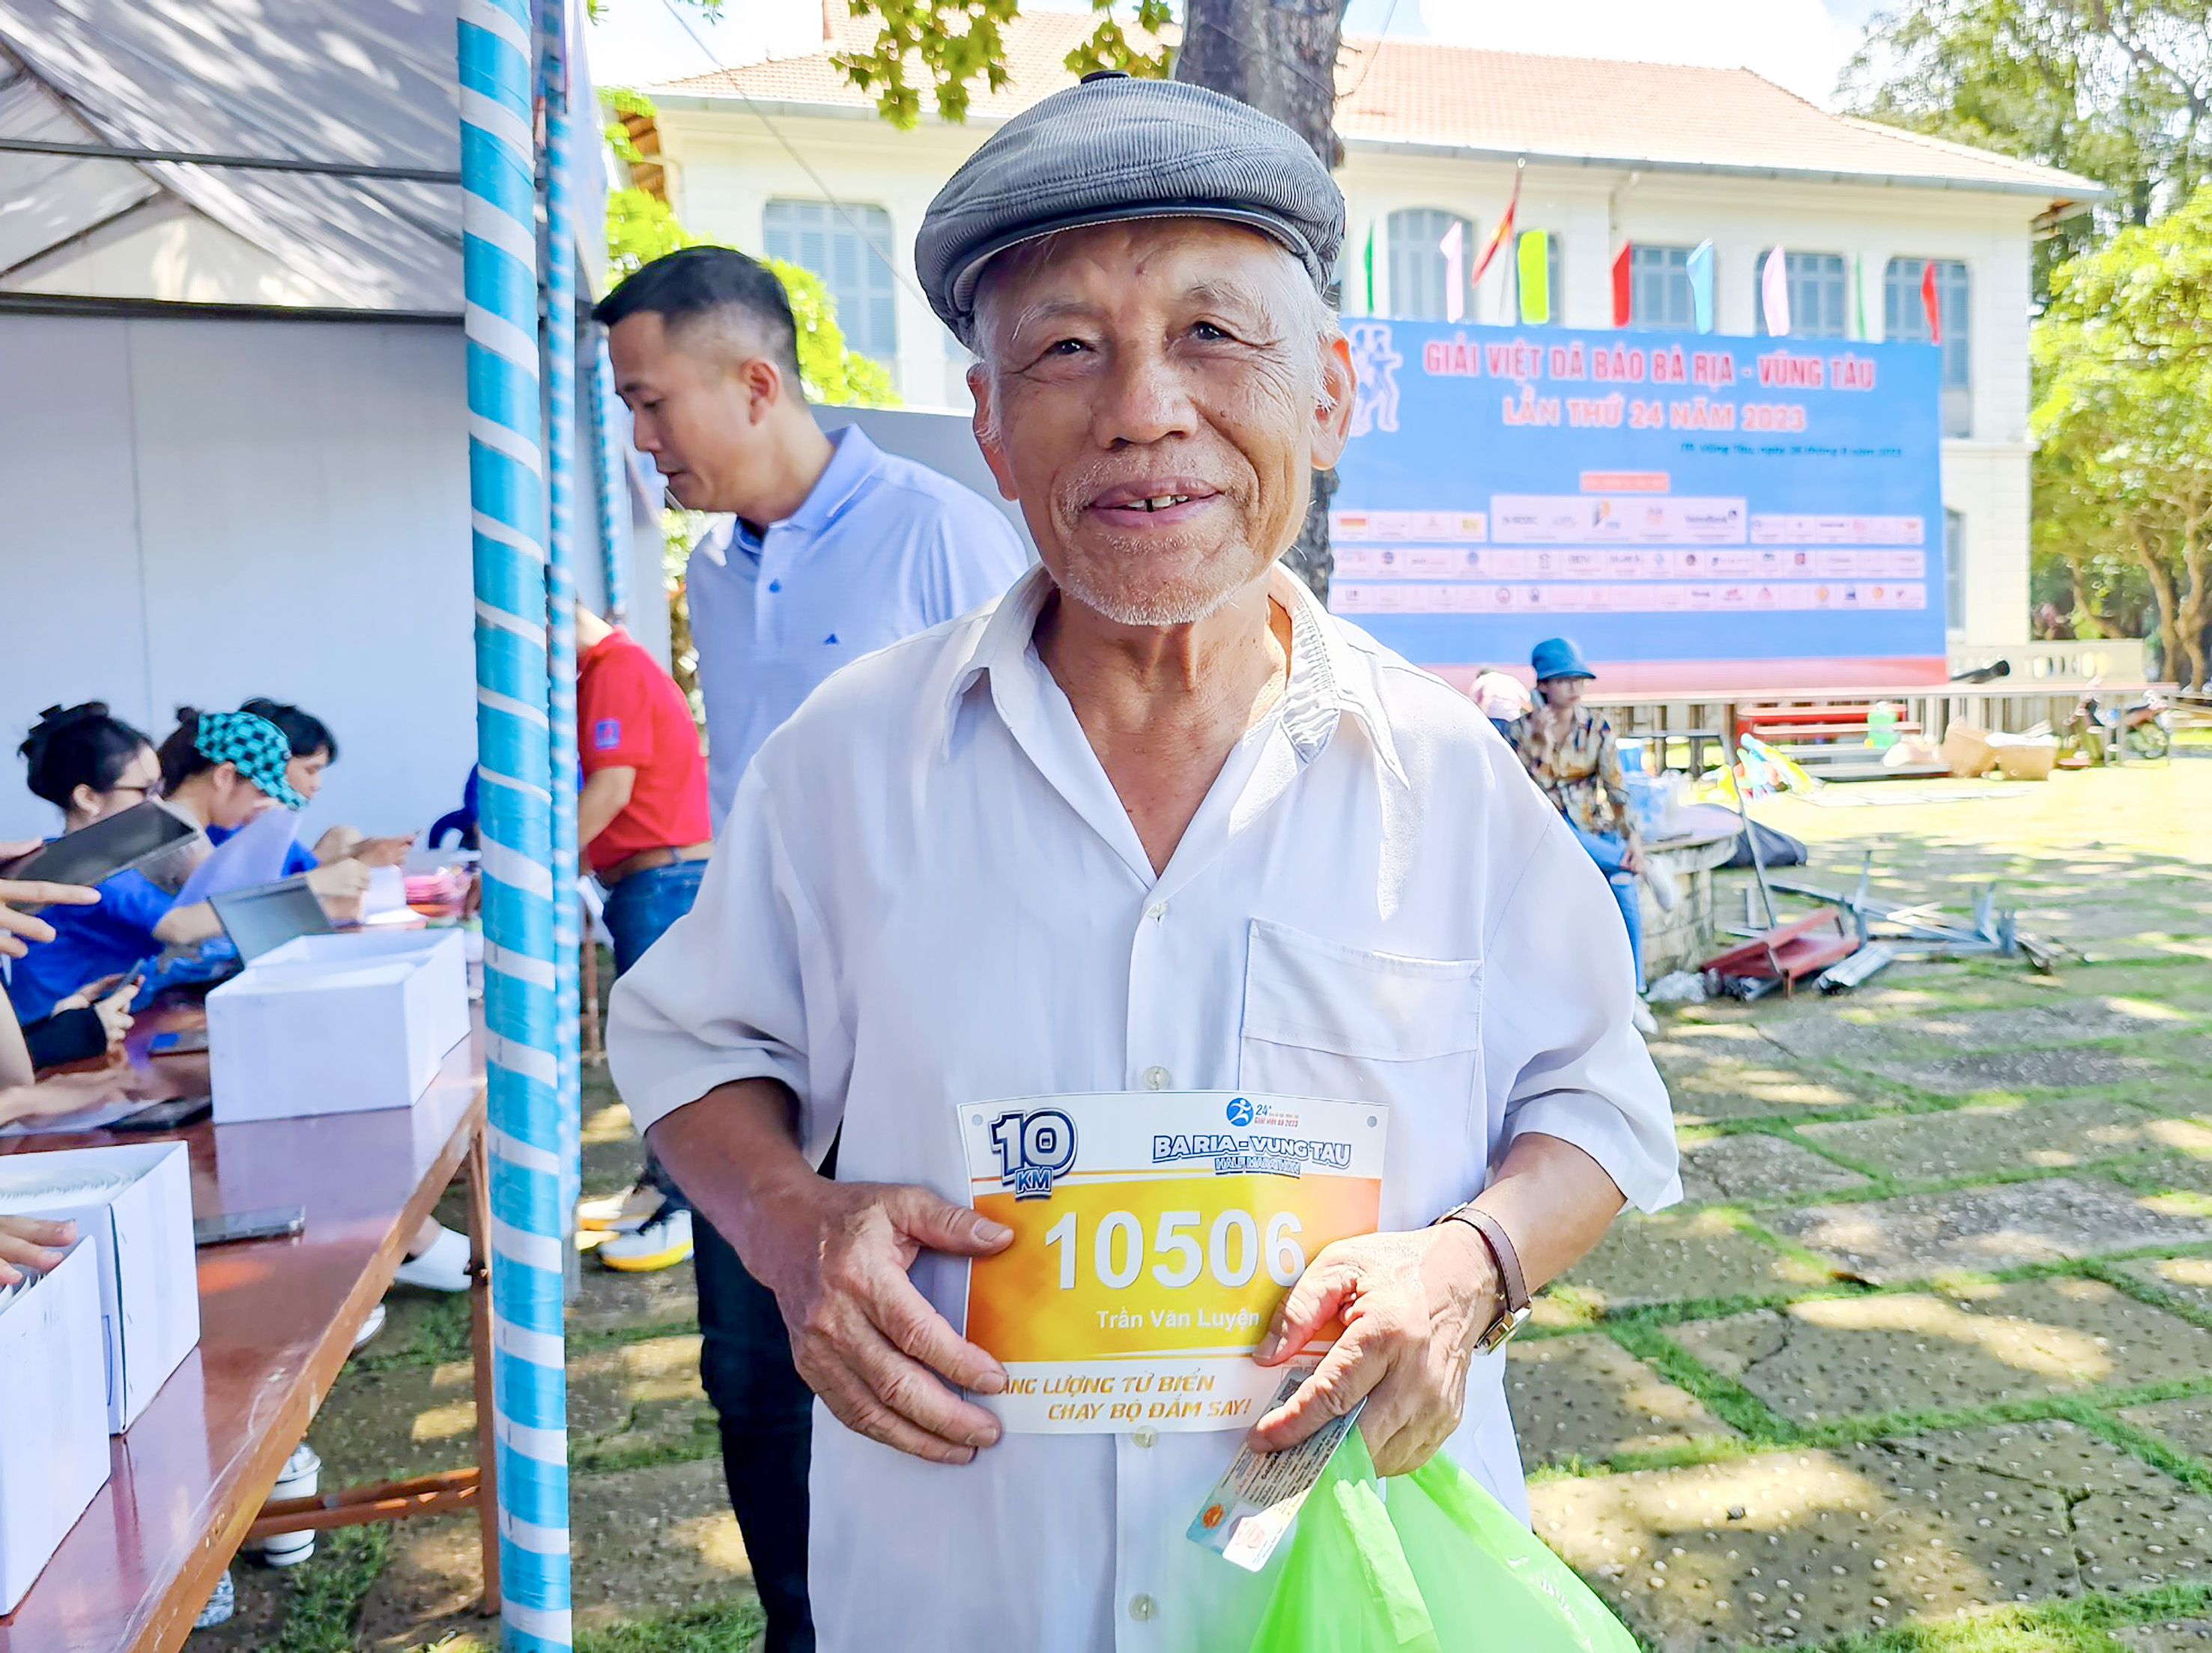 VĐV cao tuổi Trần Văn Luyện (SN 1945, ngụ tại phường Thắng Nhất TP. Vũng Tàu) nhận Bib để tham gia chạy ở cự ly 10km.